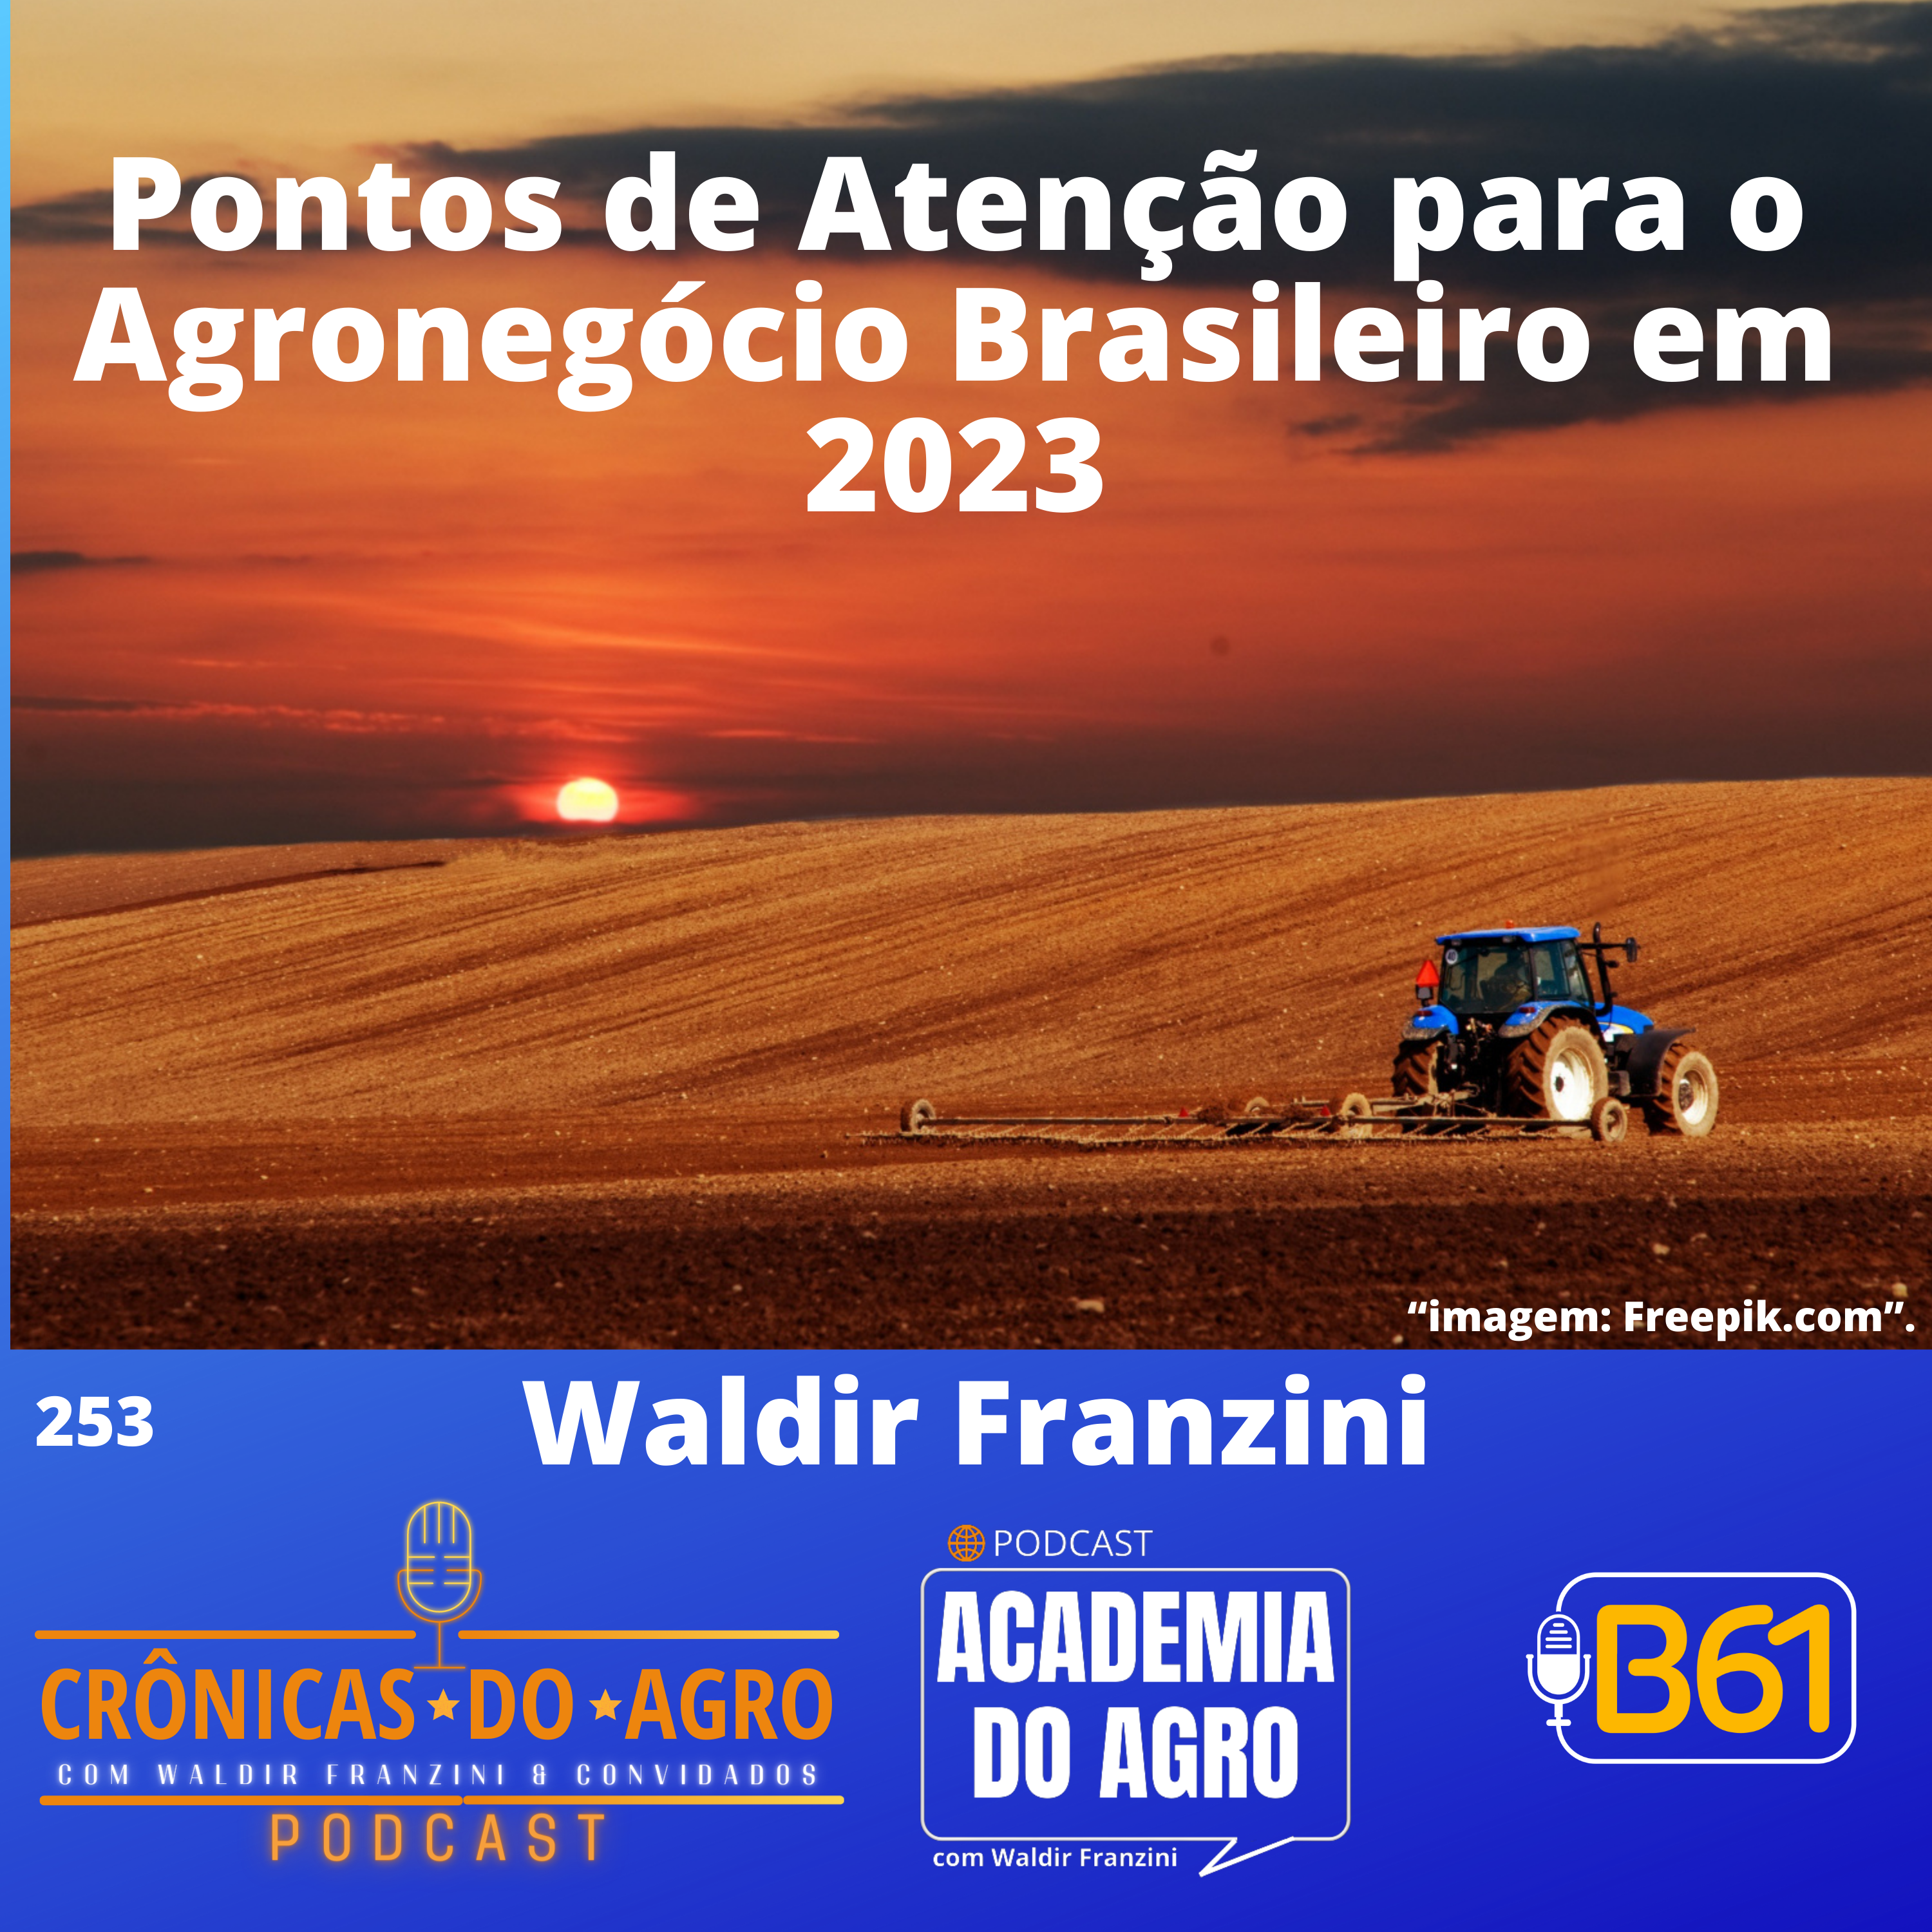 Pontos de Atenção para o Agronegócio Brasileiro em 2023